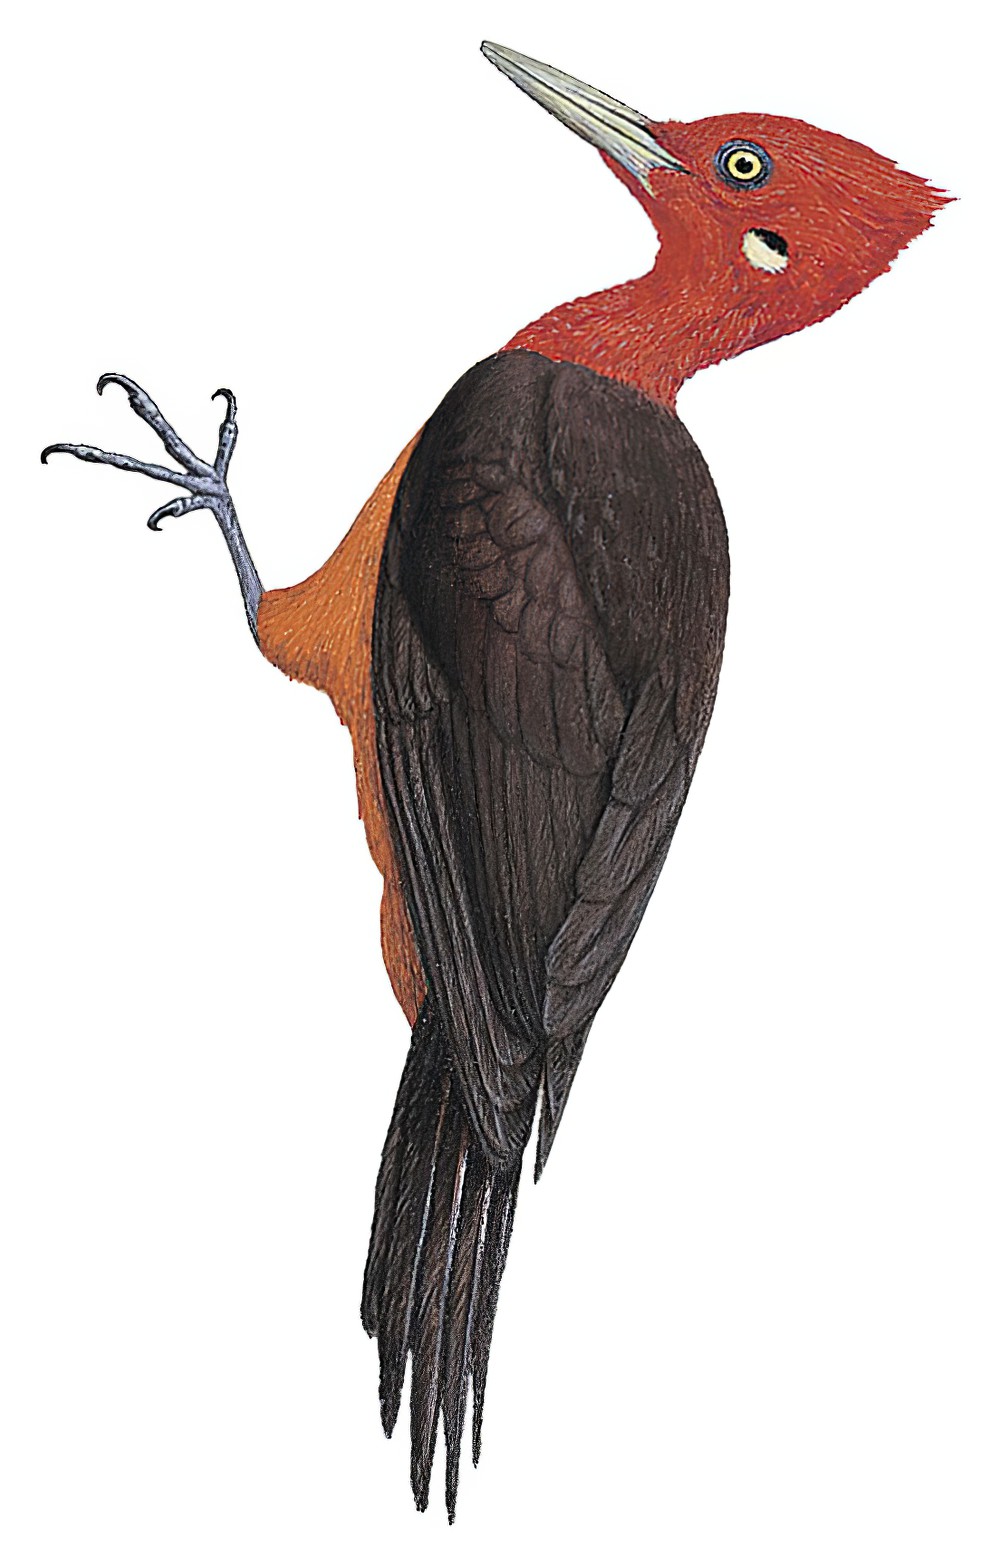 Red-necked Woodpecker / Campephilus rubricollis